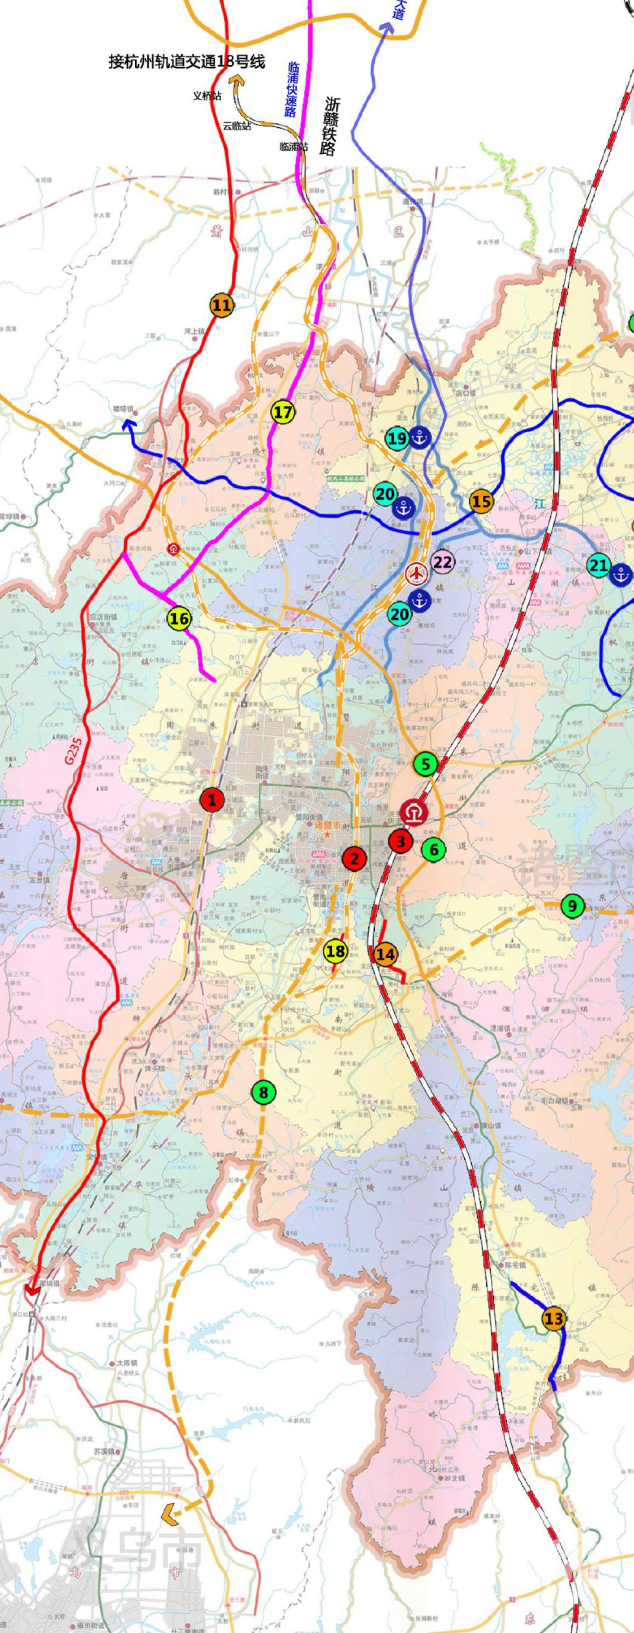 南至诸暨王家井,全长60公里,时速160公里,与杭州地铁四期18号线规划相